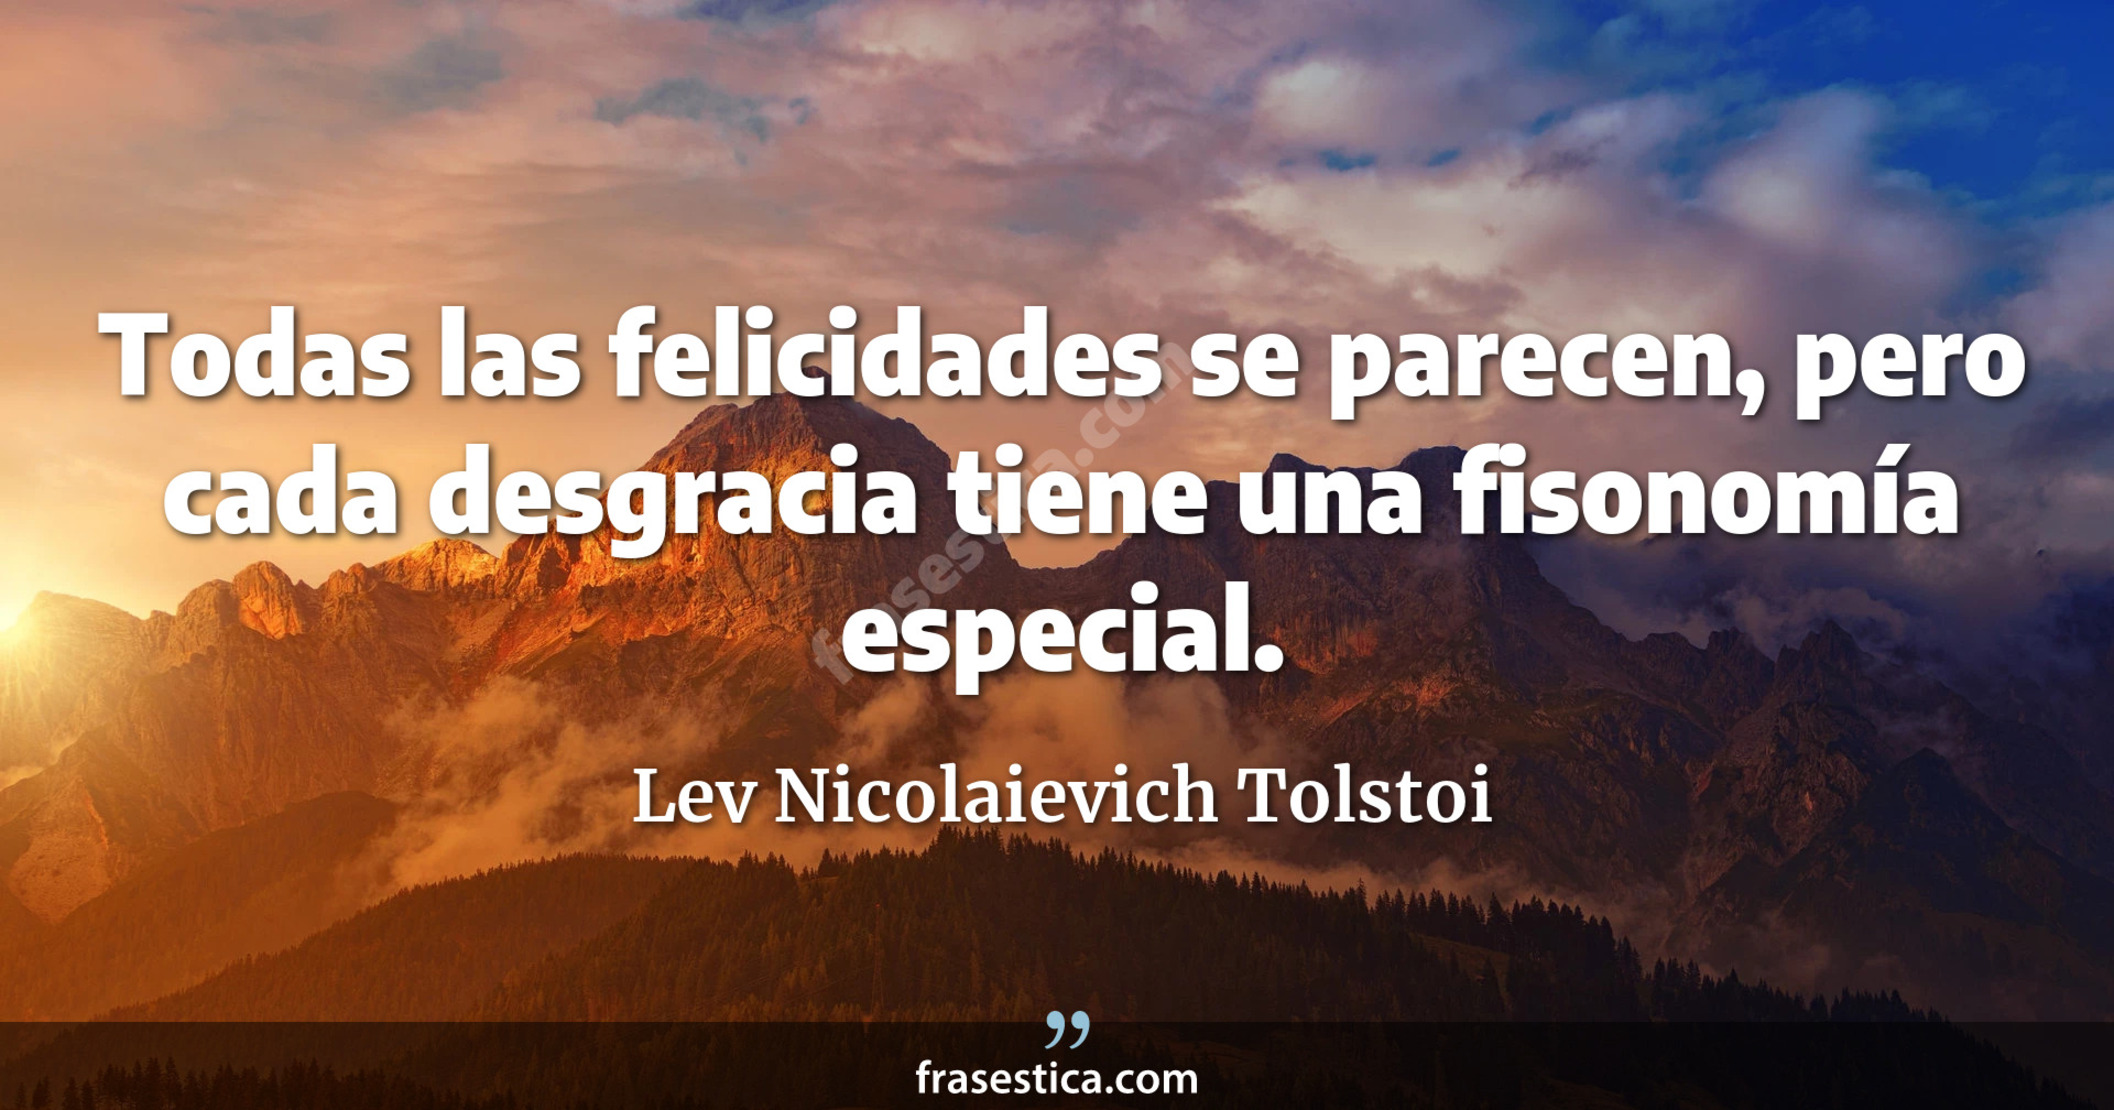 Todas las felicidades se parecen, pero cada desgracia tiene una fisonomía especial. - Lev Nicolaievich Tolstoi